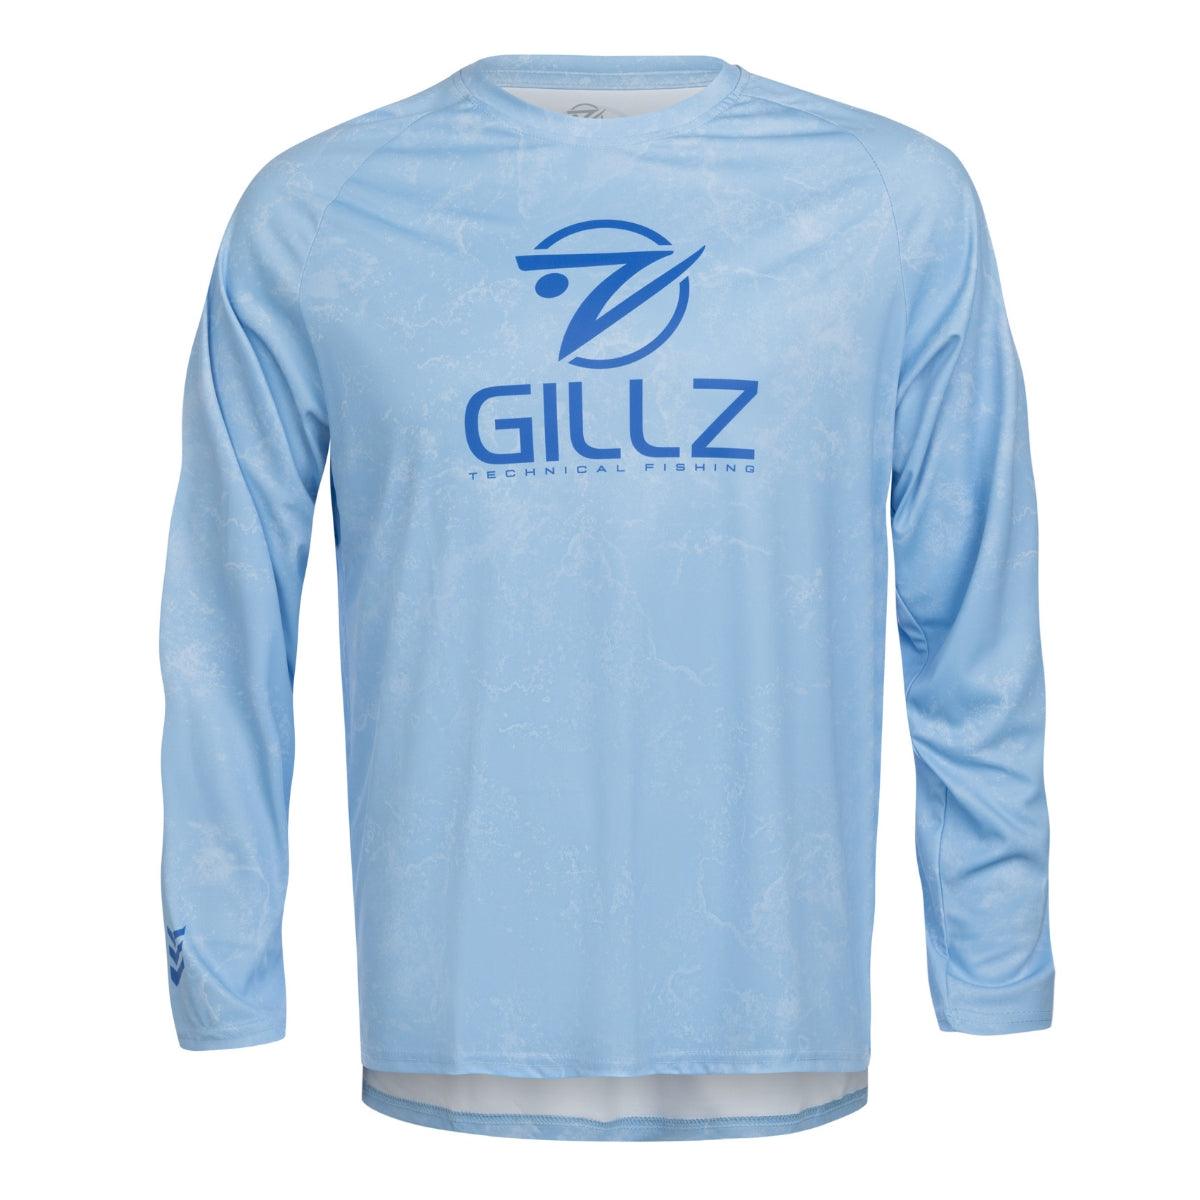 Men's Contender Long Sleeve UV "Asslt" - Gillz